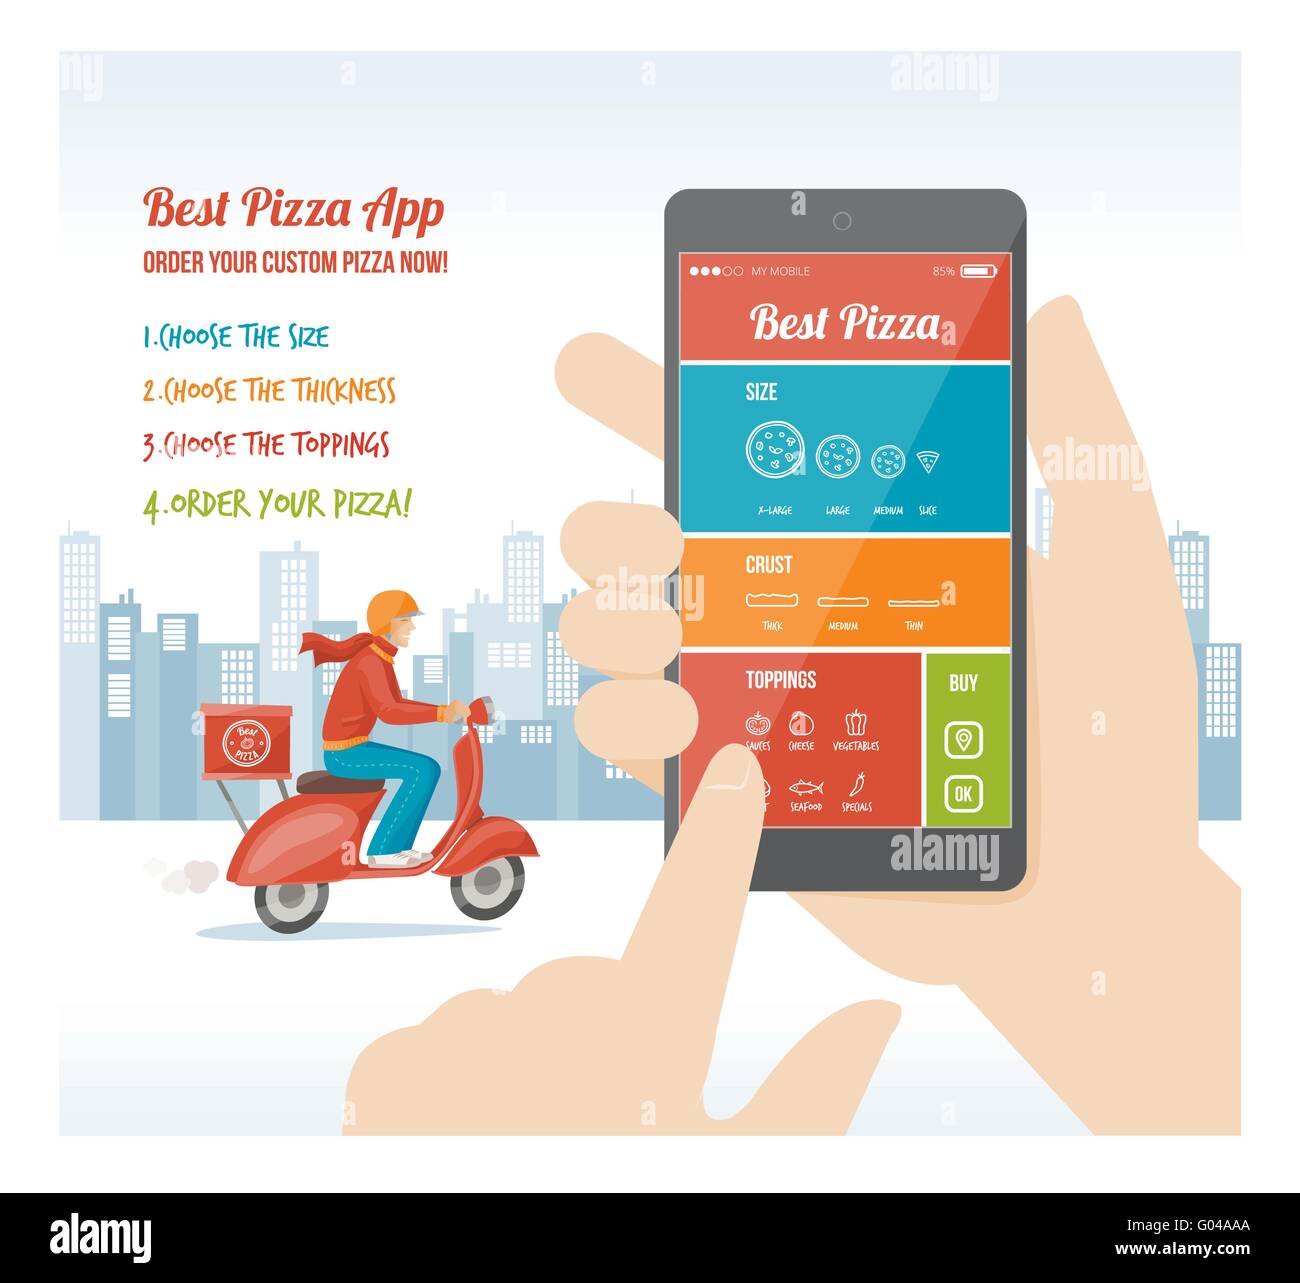 La mejor pizza app diseño de interfaz con el ingrediente y iconos en pantalla móvil Ilustración del Vector